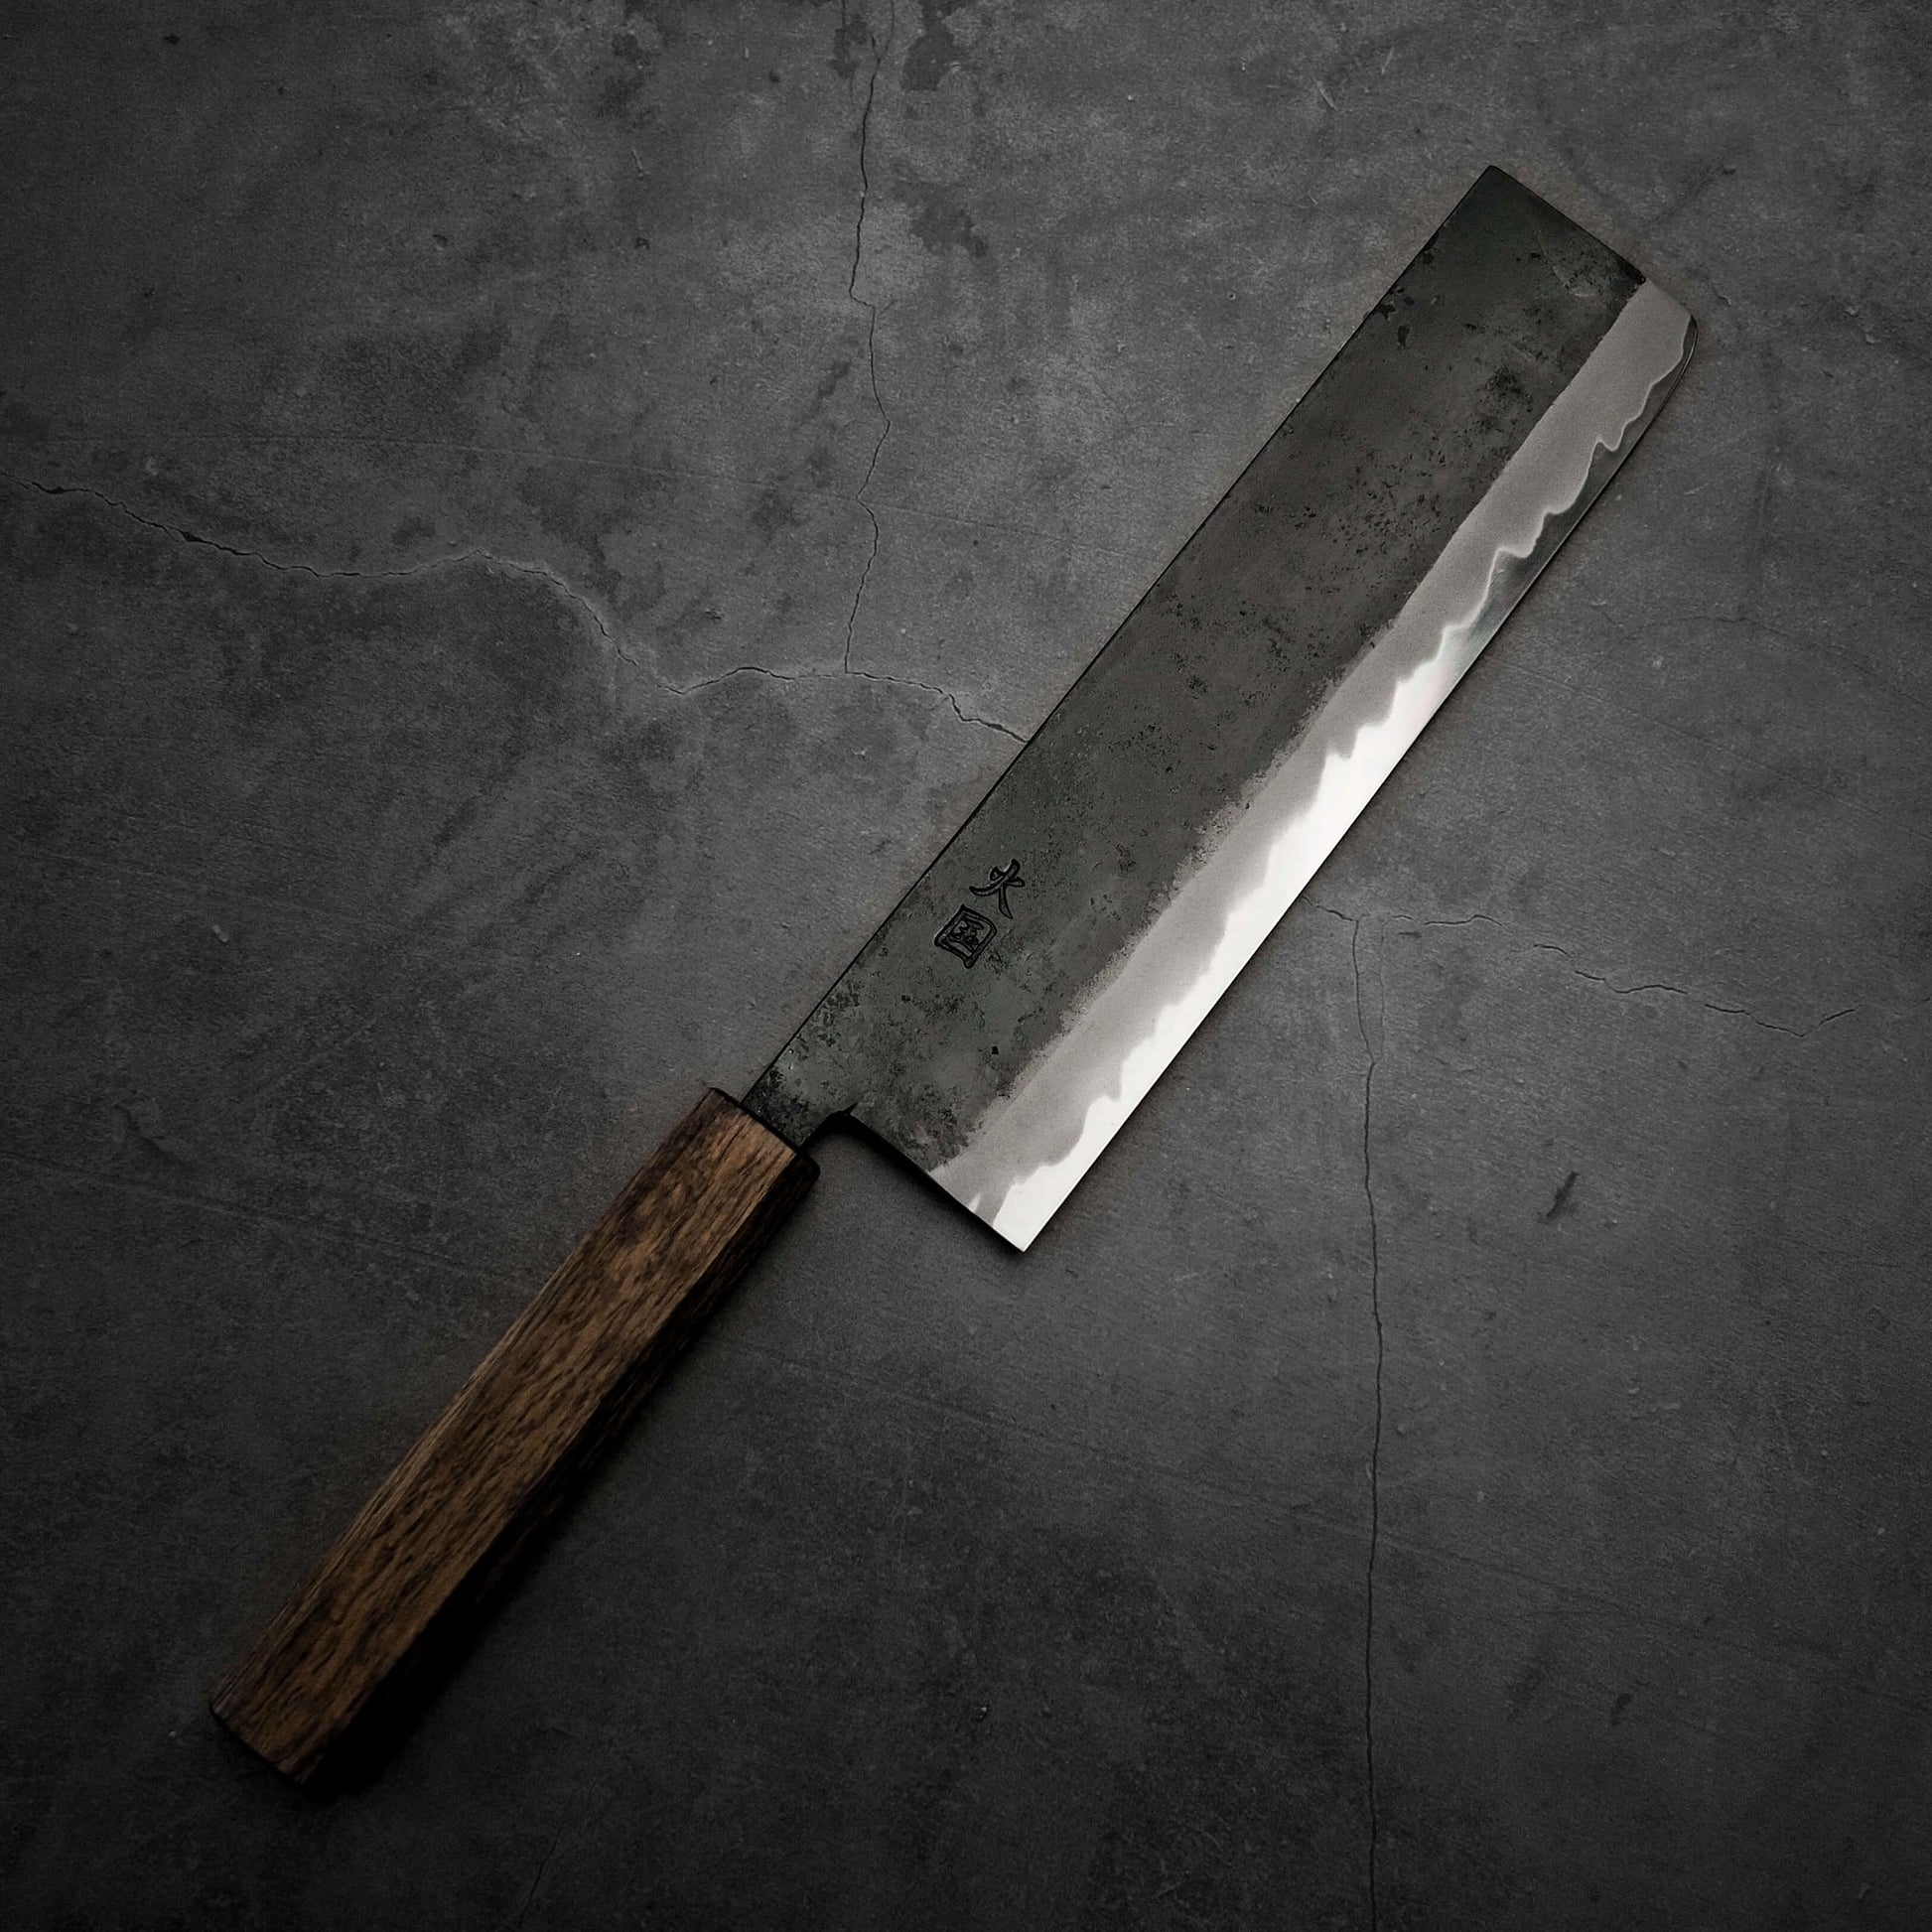 Hinokuni kurouchi shirogami#1 nakiri 210mm - Zahocho Japanese Knives